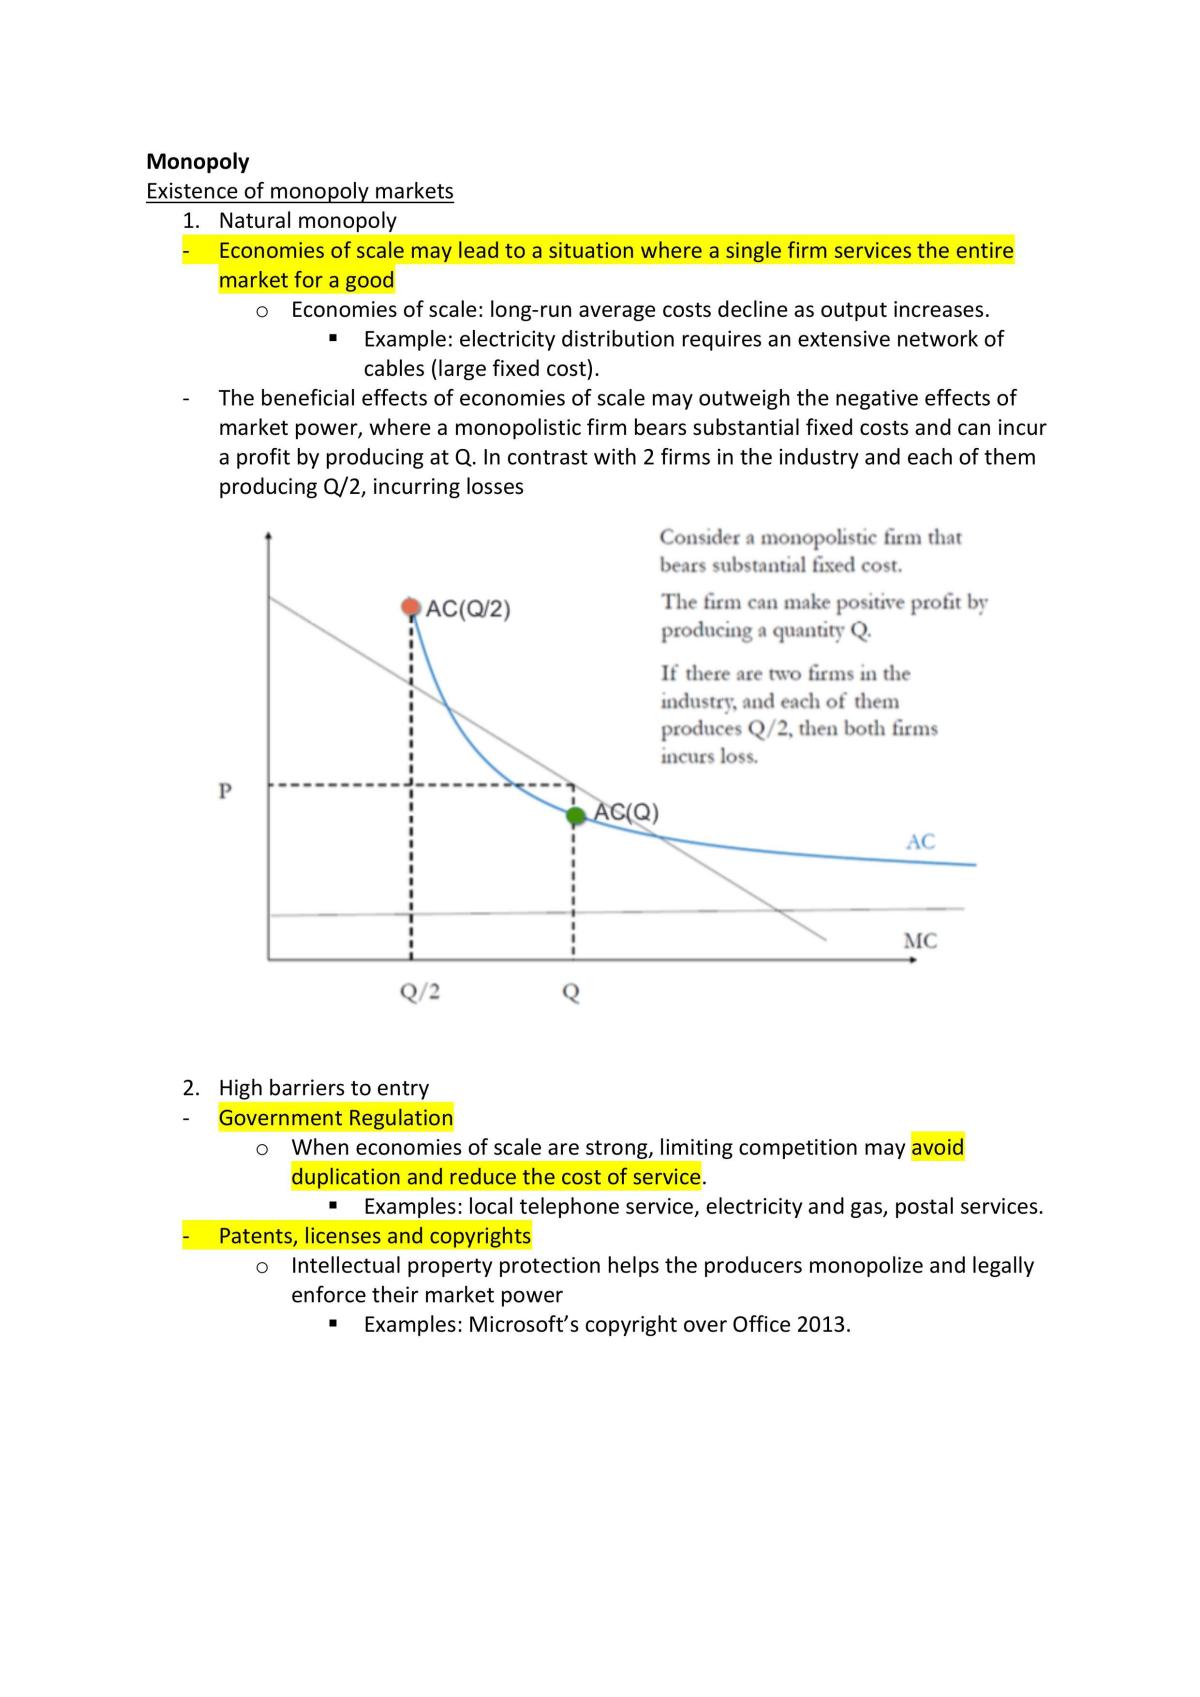 BSP1703 Study Notes | BSP1703 - Managerial Economics - NUS | Thinkswap